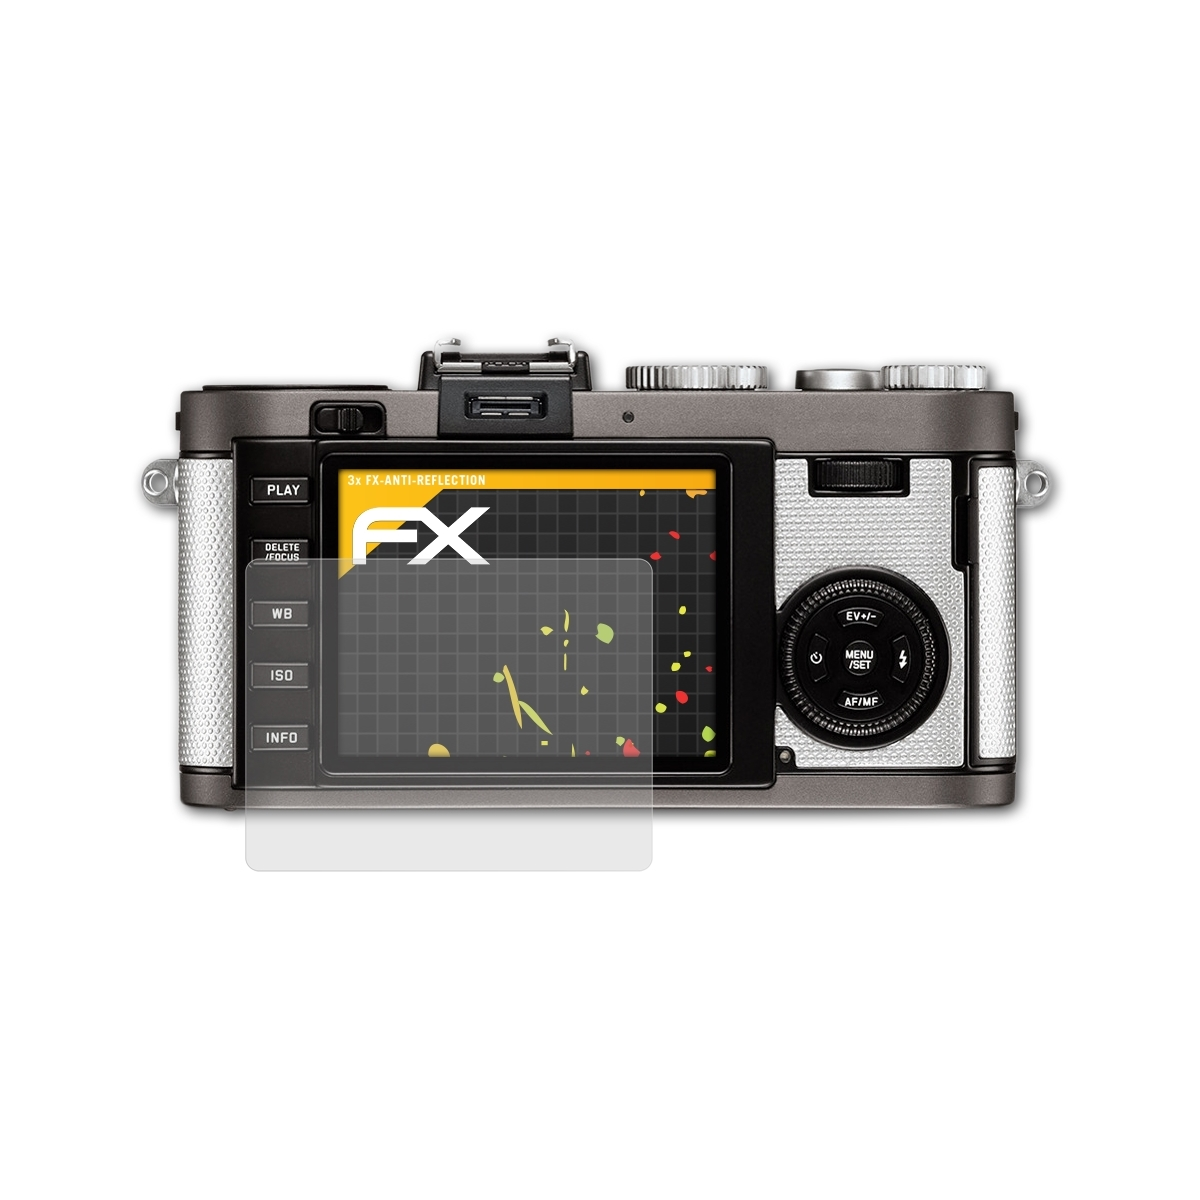 ATFOLIX 3x (Typ 102)) FX-Antireflex Displayschutz(für X-E Leica